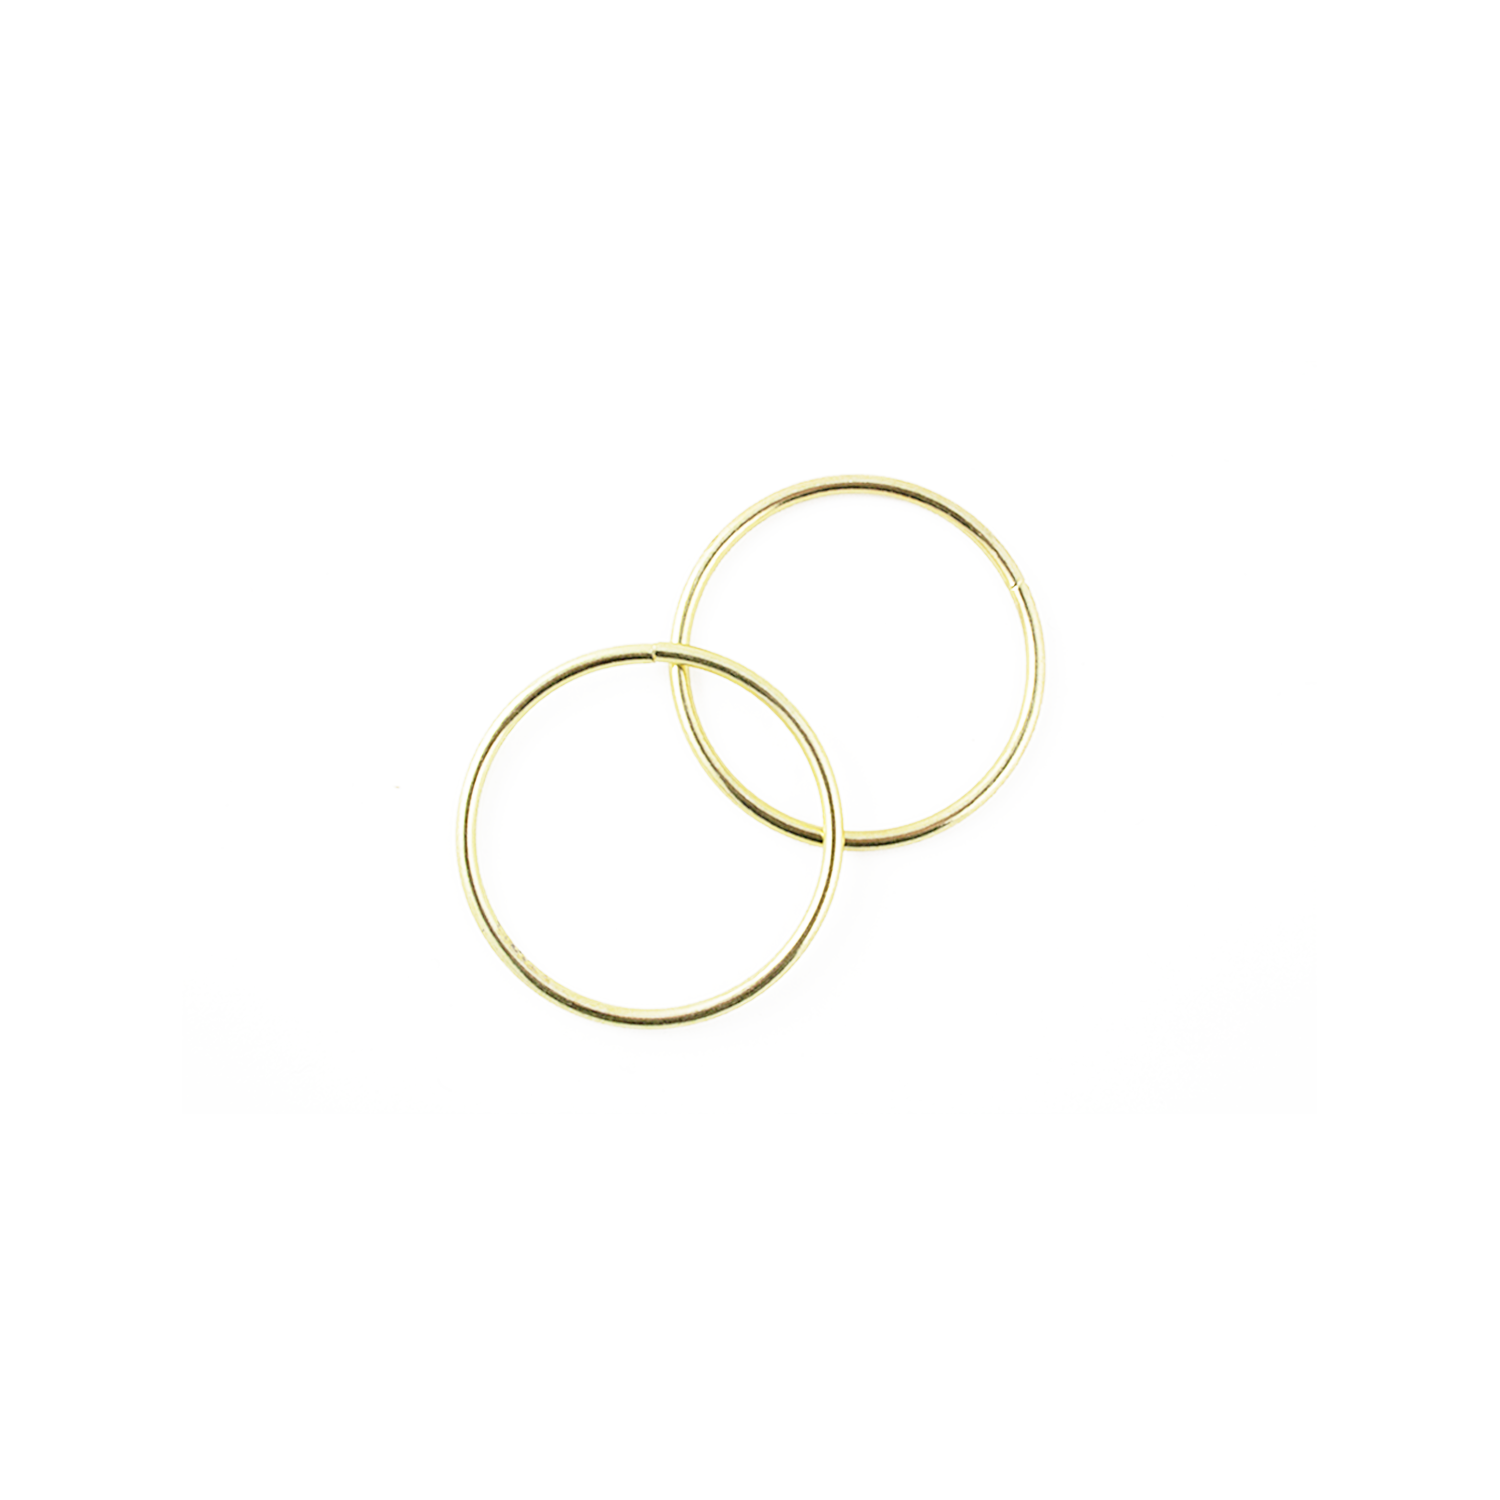 3 Inch Metal Rings